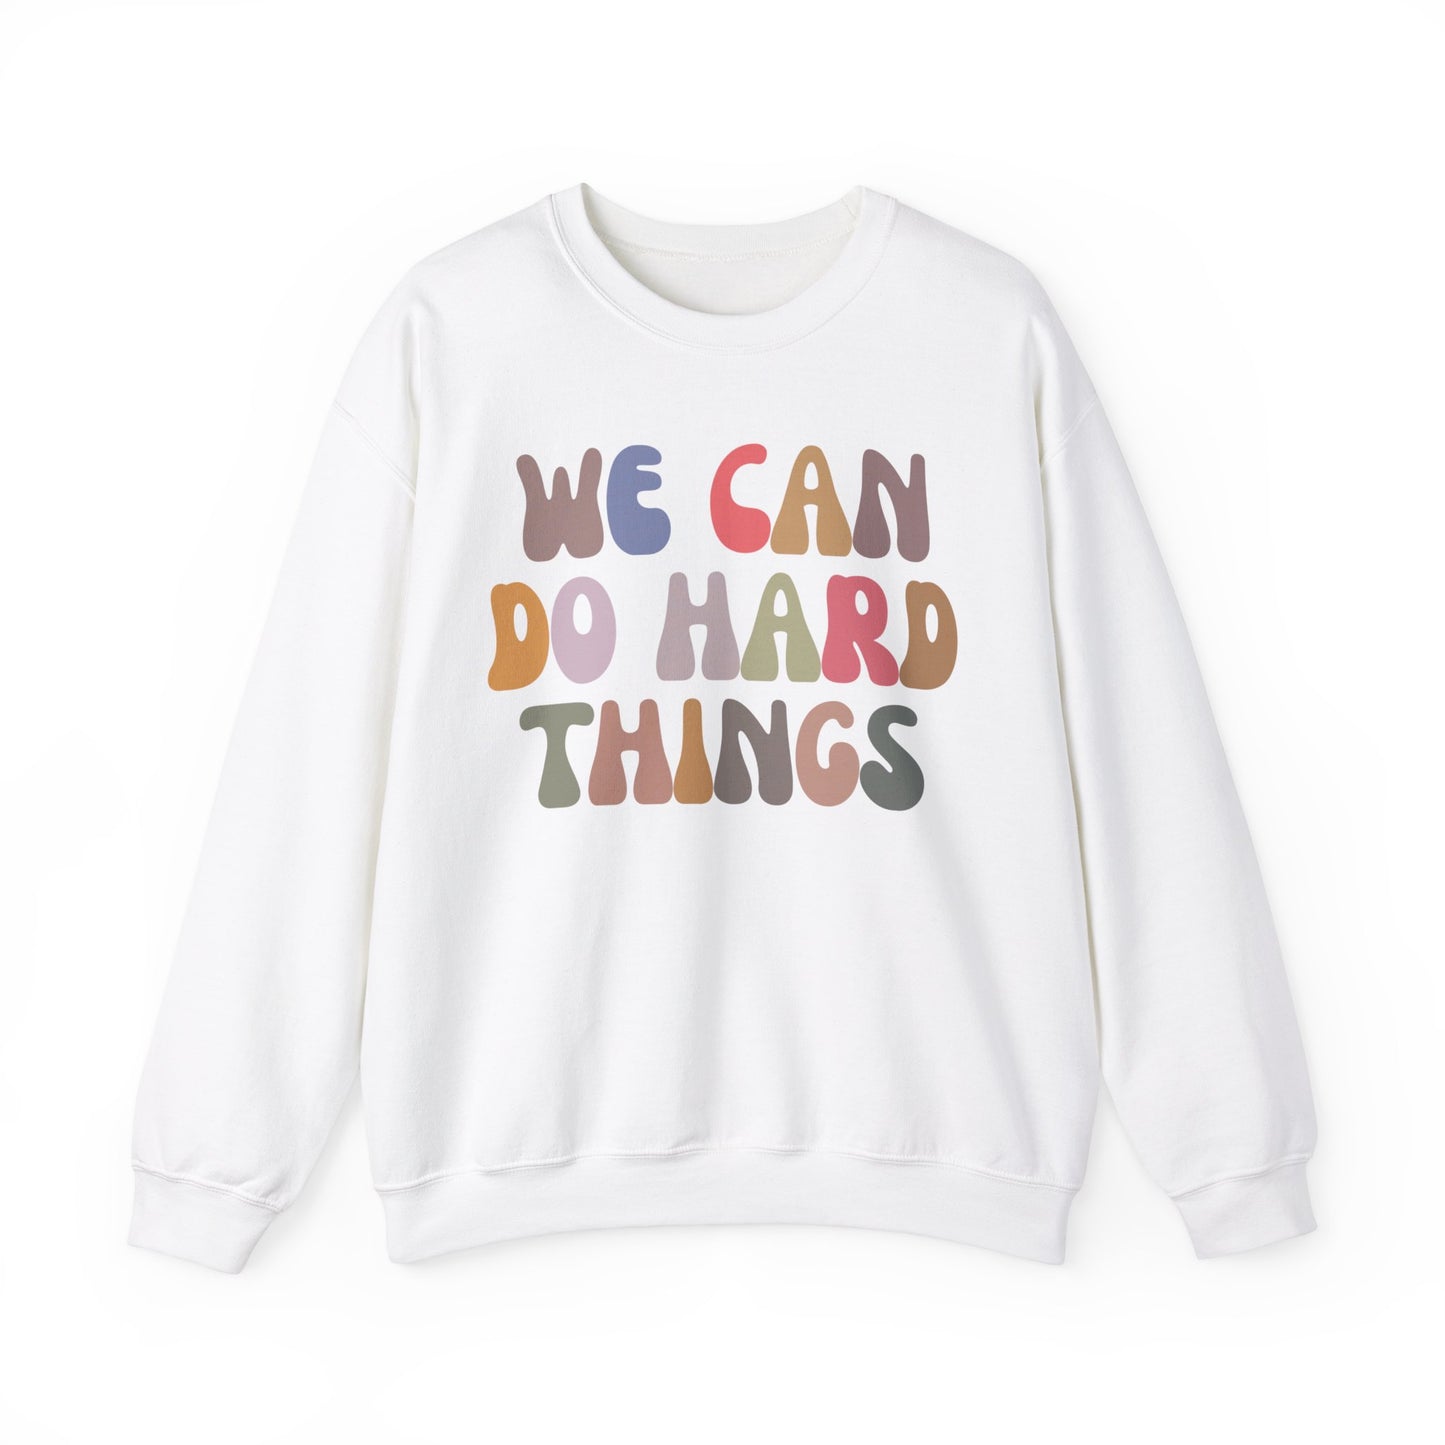 We Can Do Hard Things Sweatshirt, Take a Risk Sweatshirt, Strive Hard, State Testing Sweatshirt, Inspirational Sweatshirt for Women, S1466